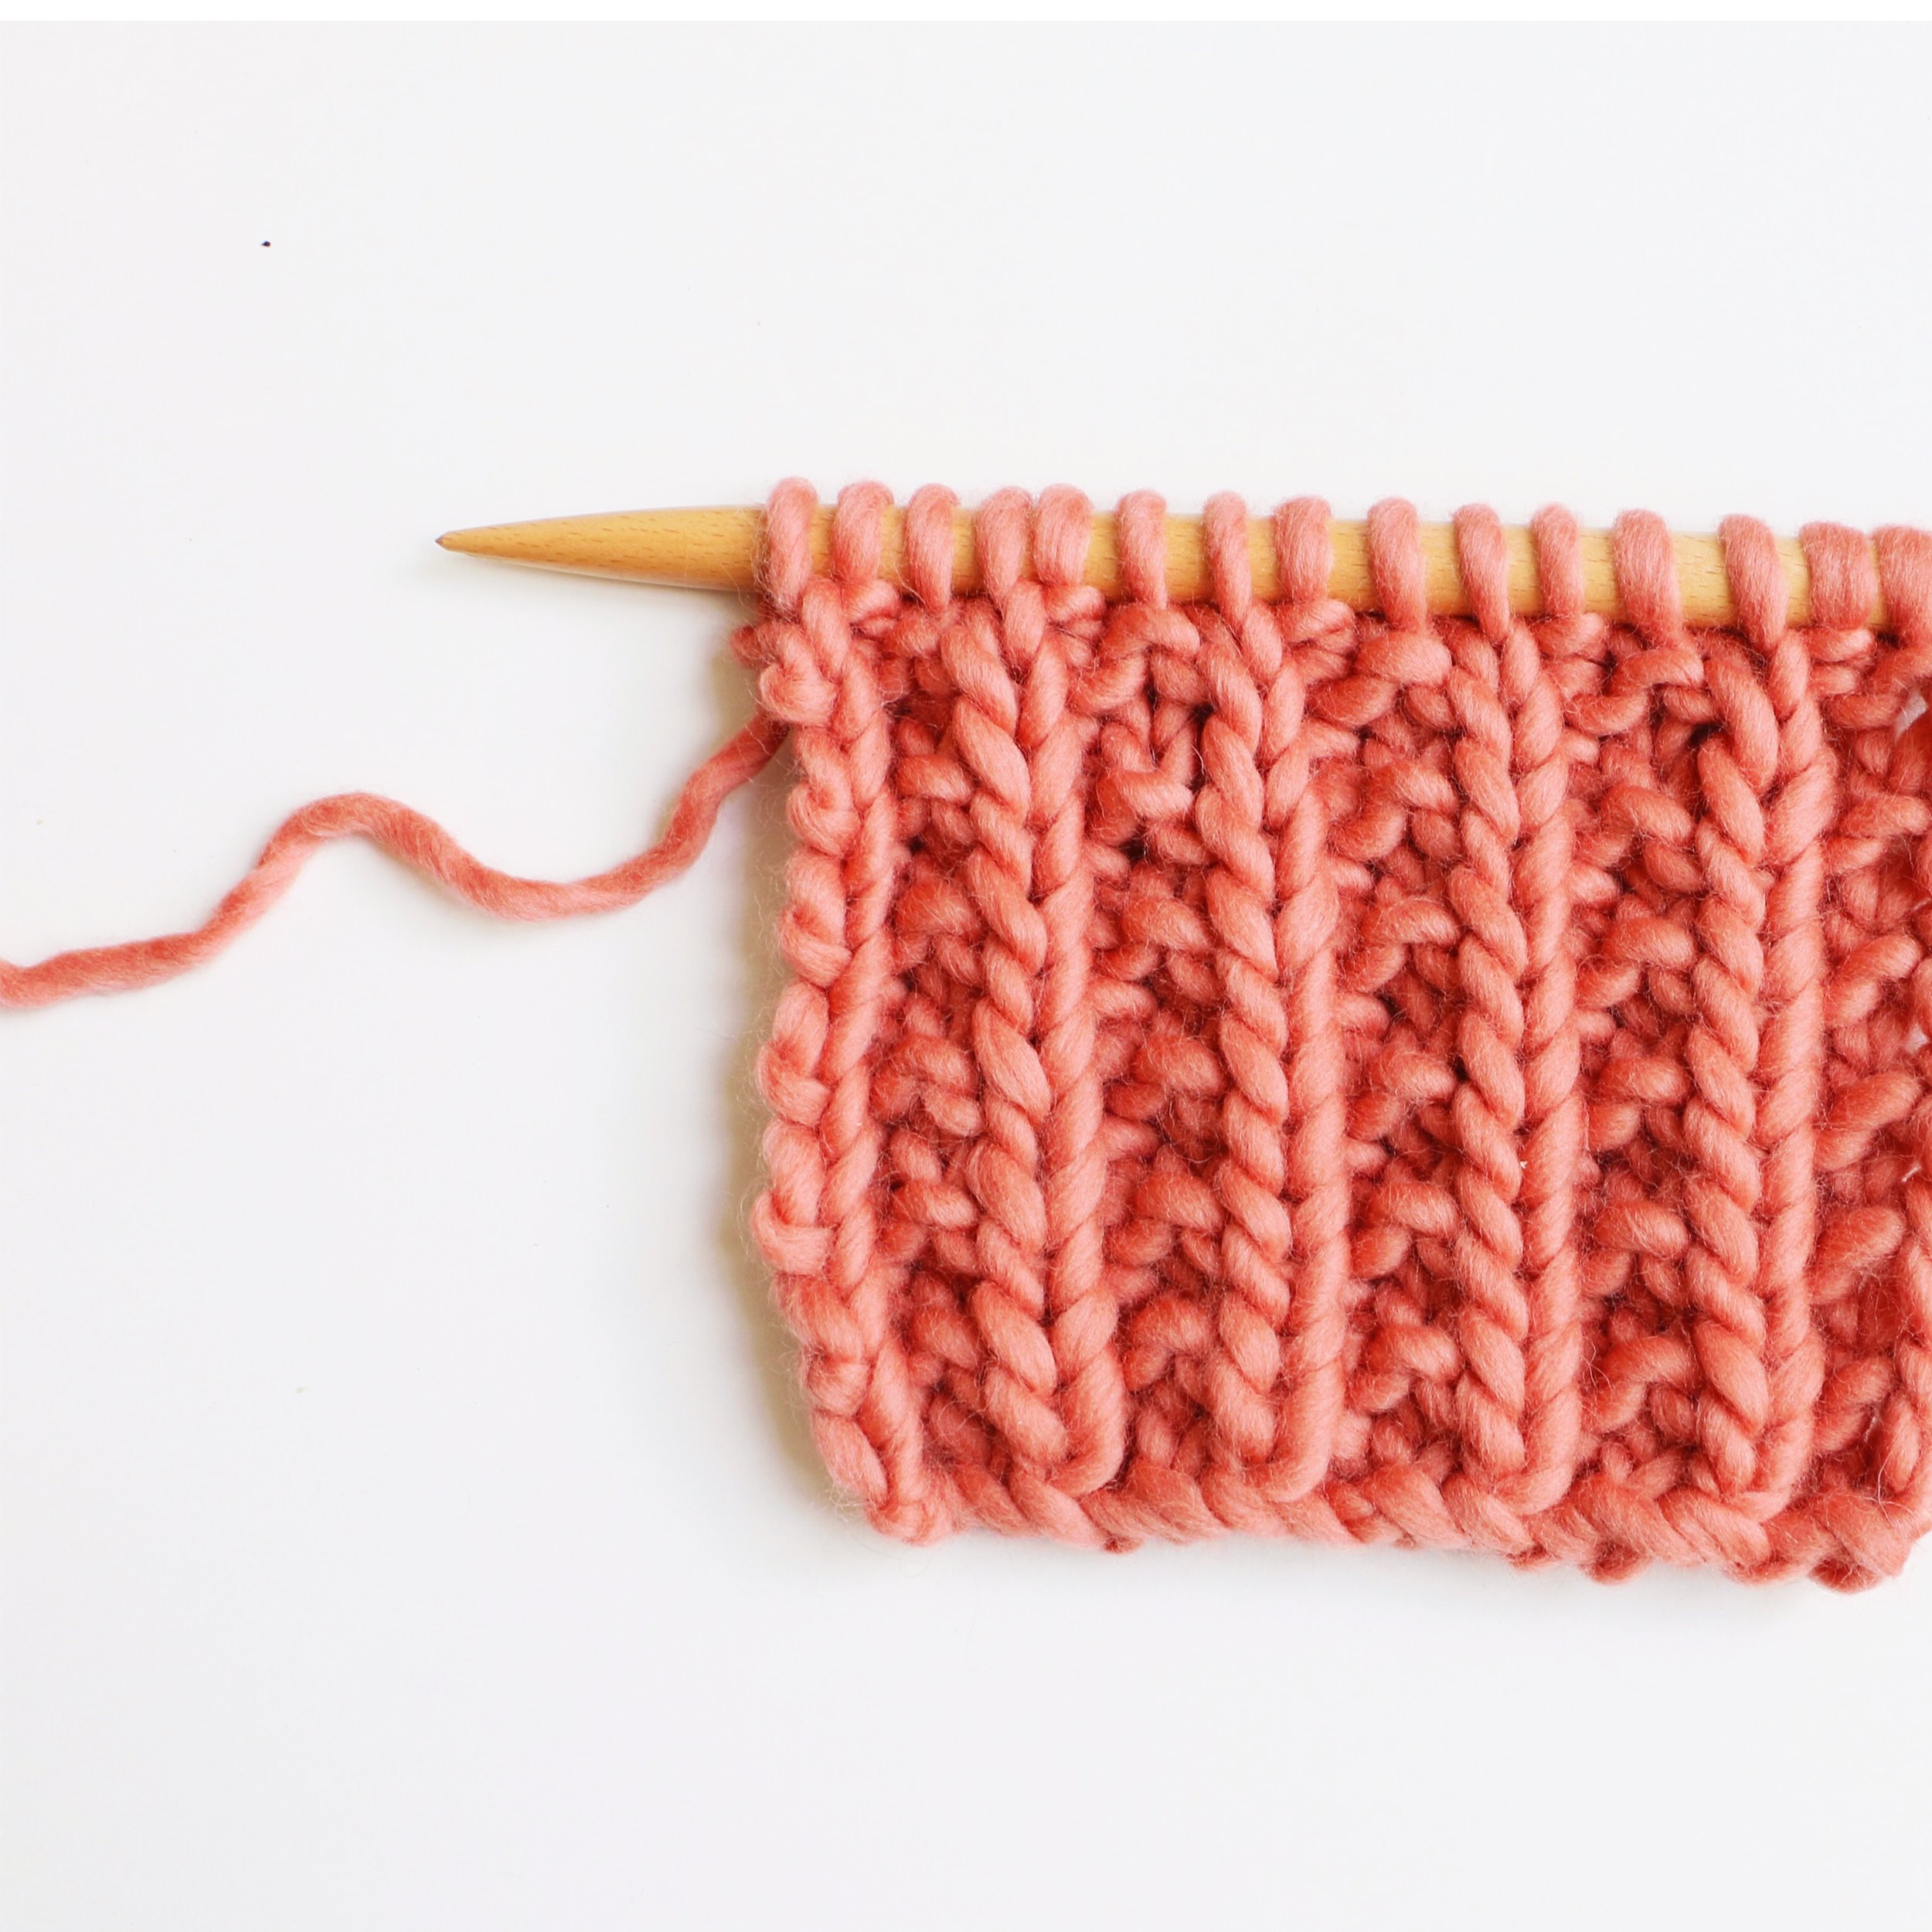 Apprendre à tricoter : Maille endroit et maille envers - La Malle aux Mille  Mailles